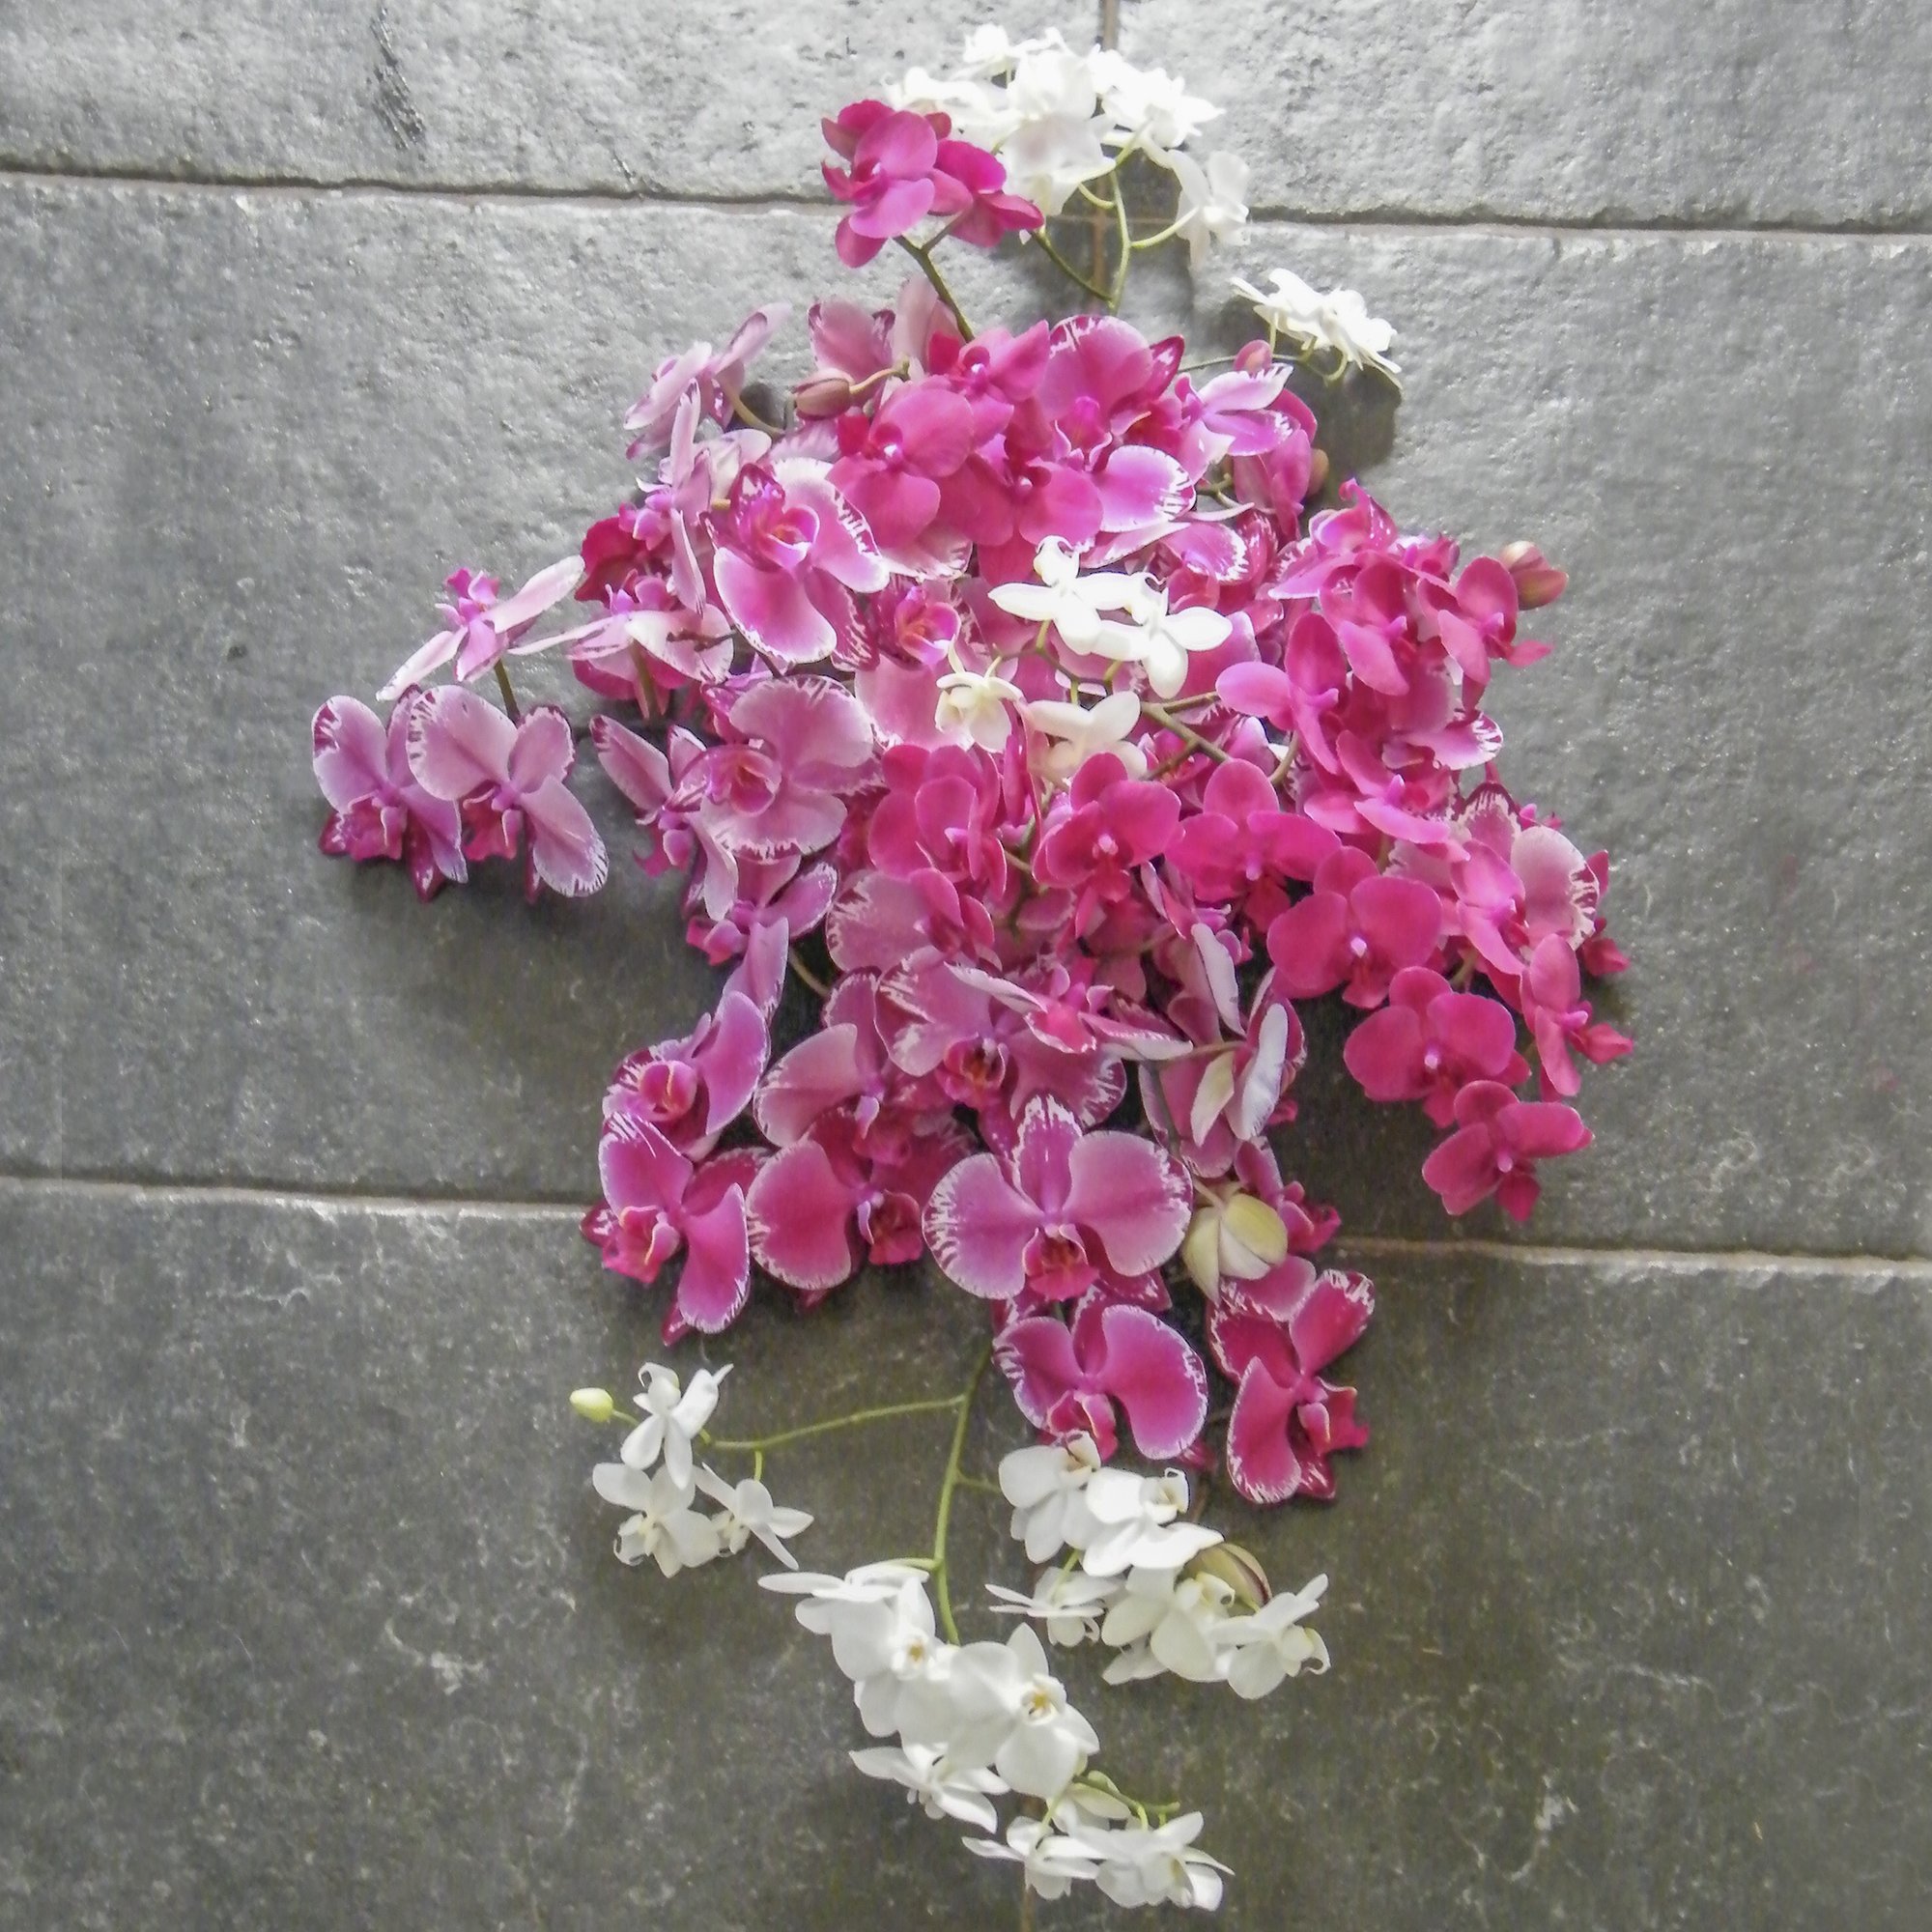 de Kracht van Bloemen- bloemen bij overlijden- afscheidsbloemen  25.jpg